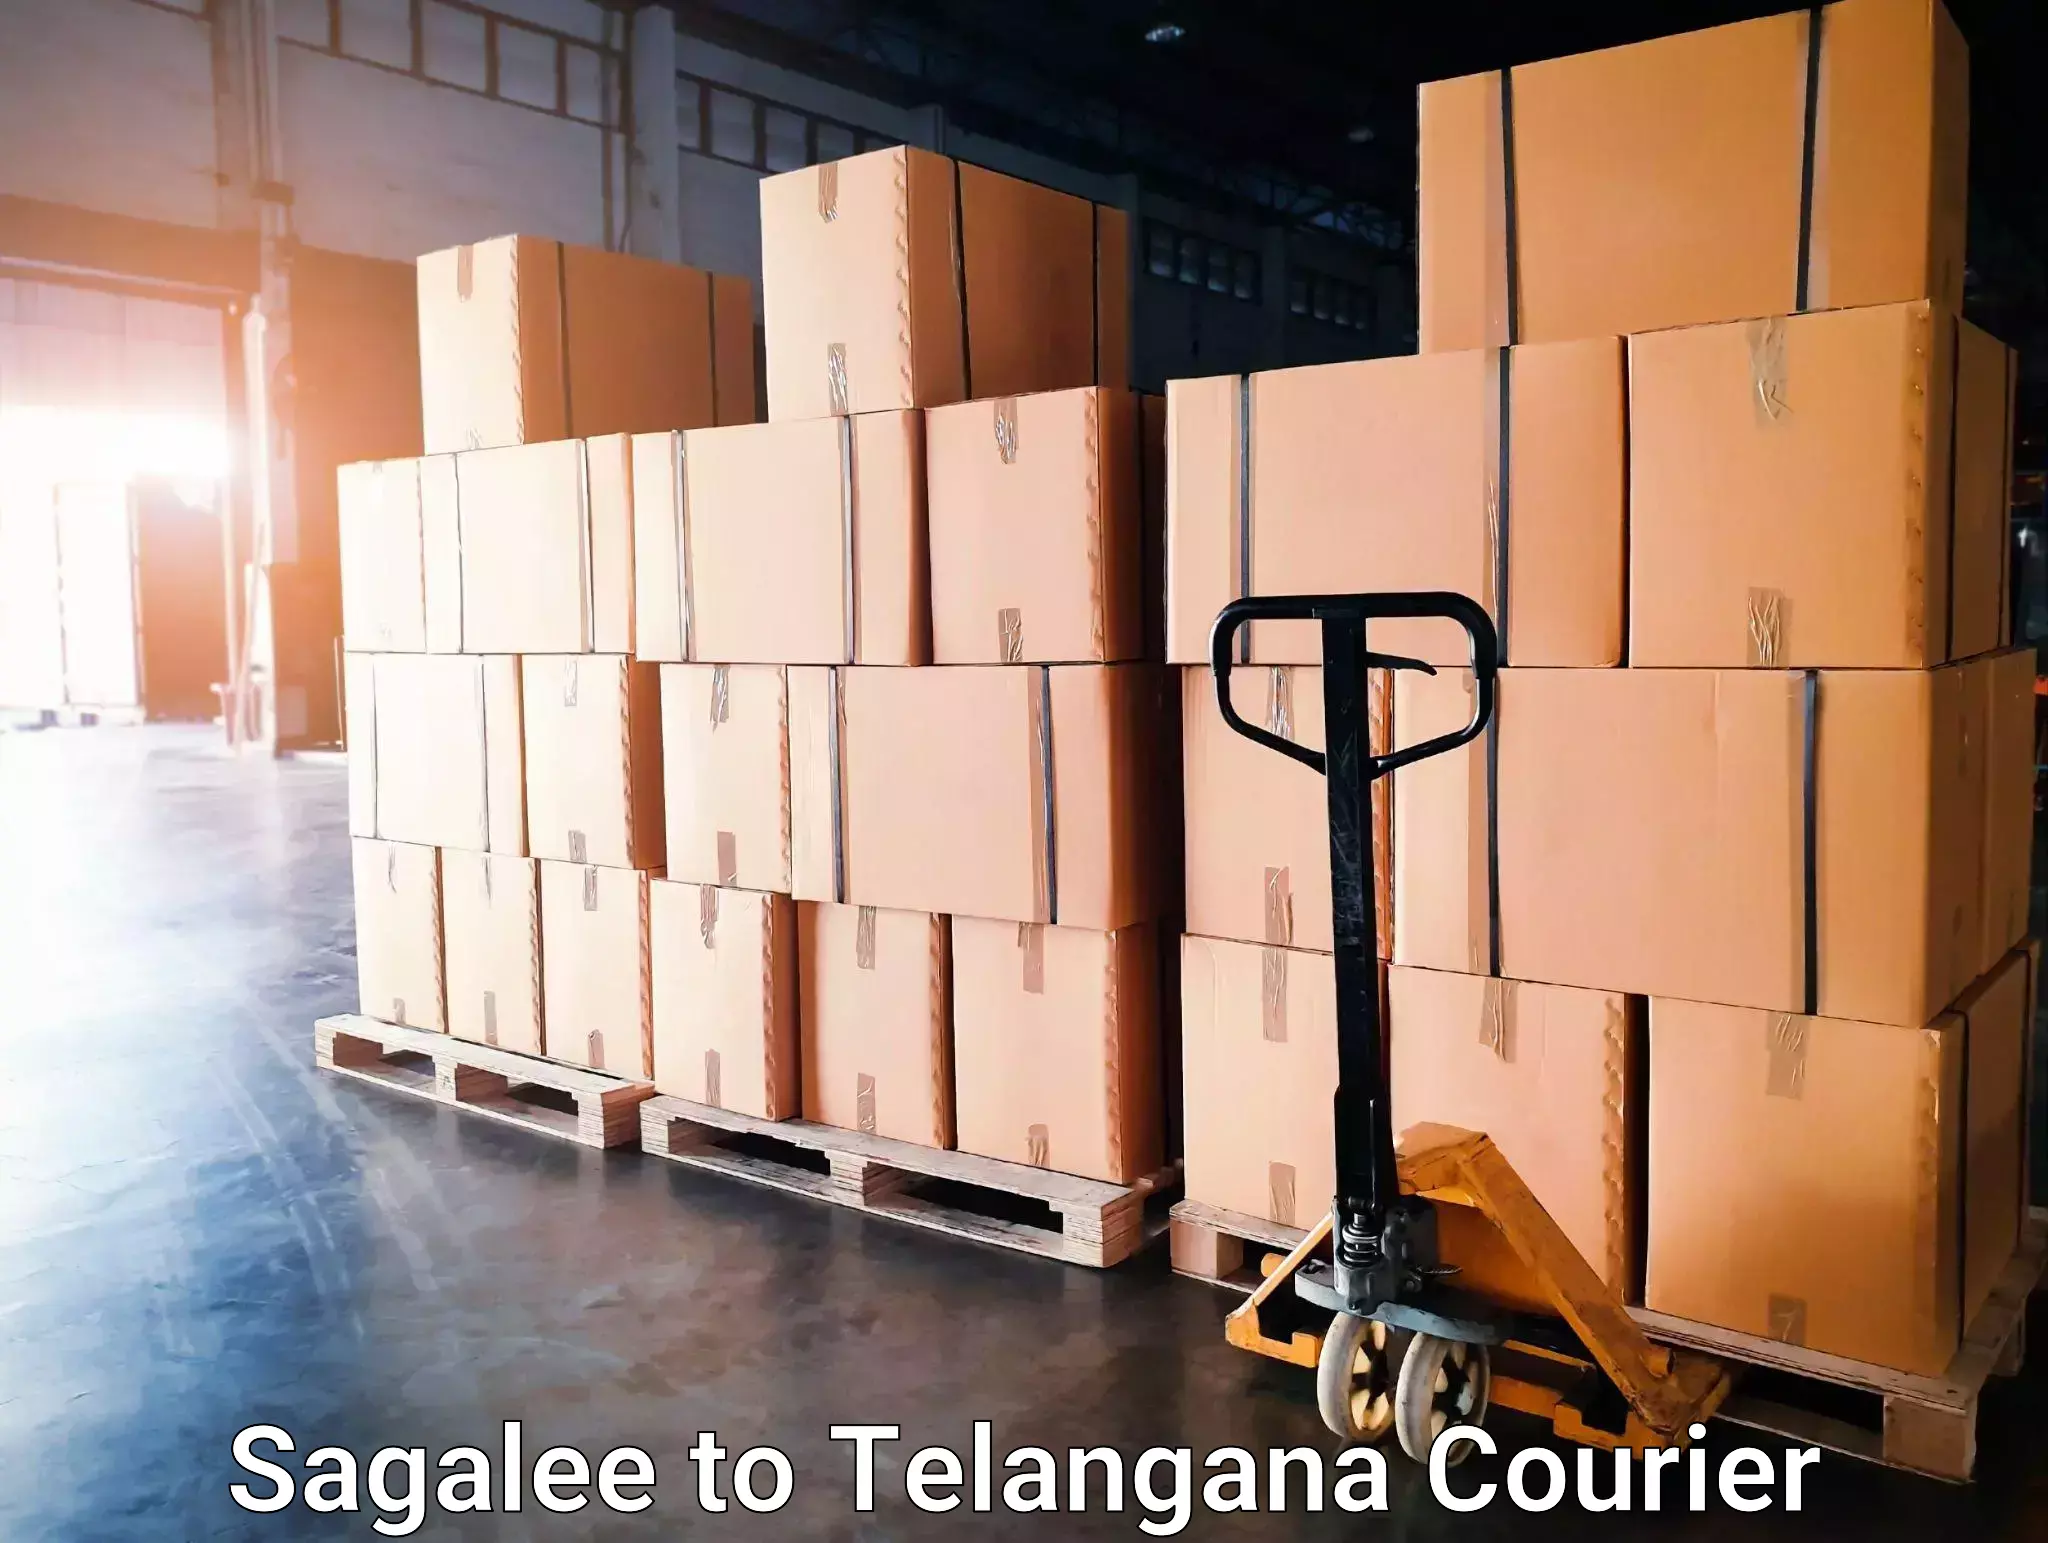 Global logistics network Sagalee to Adilabad